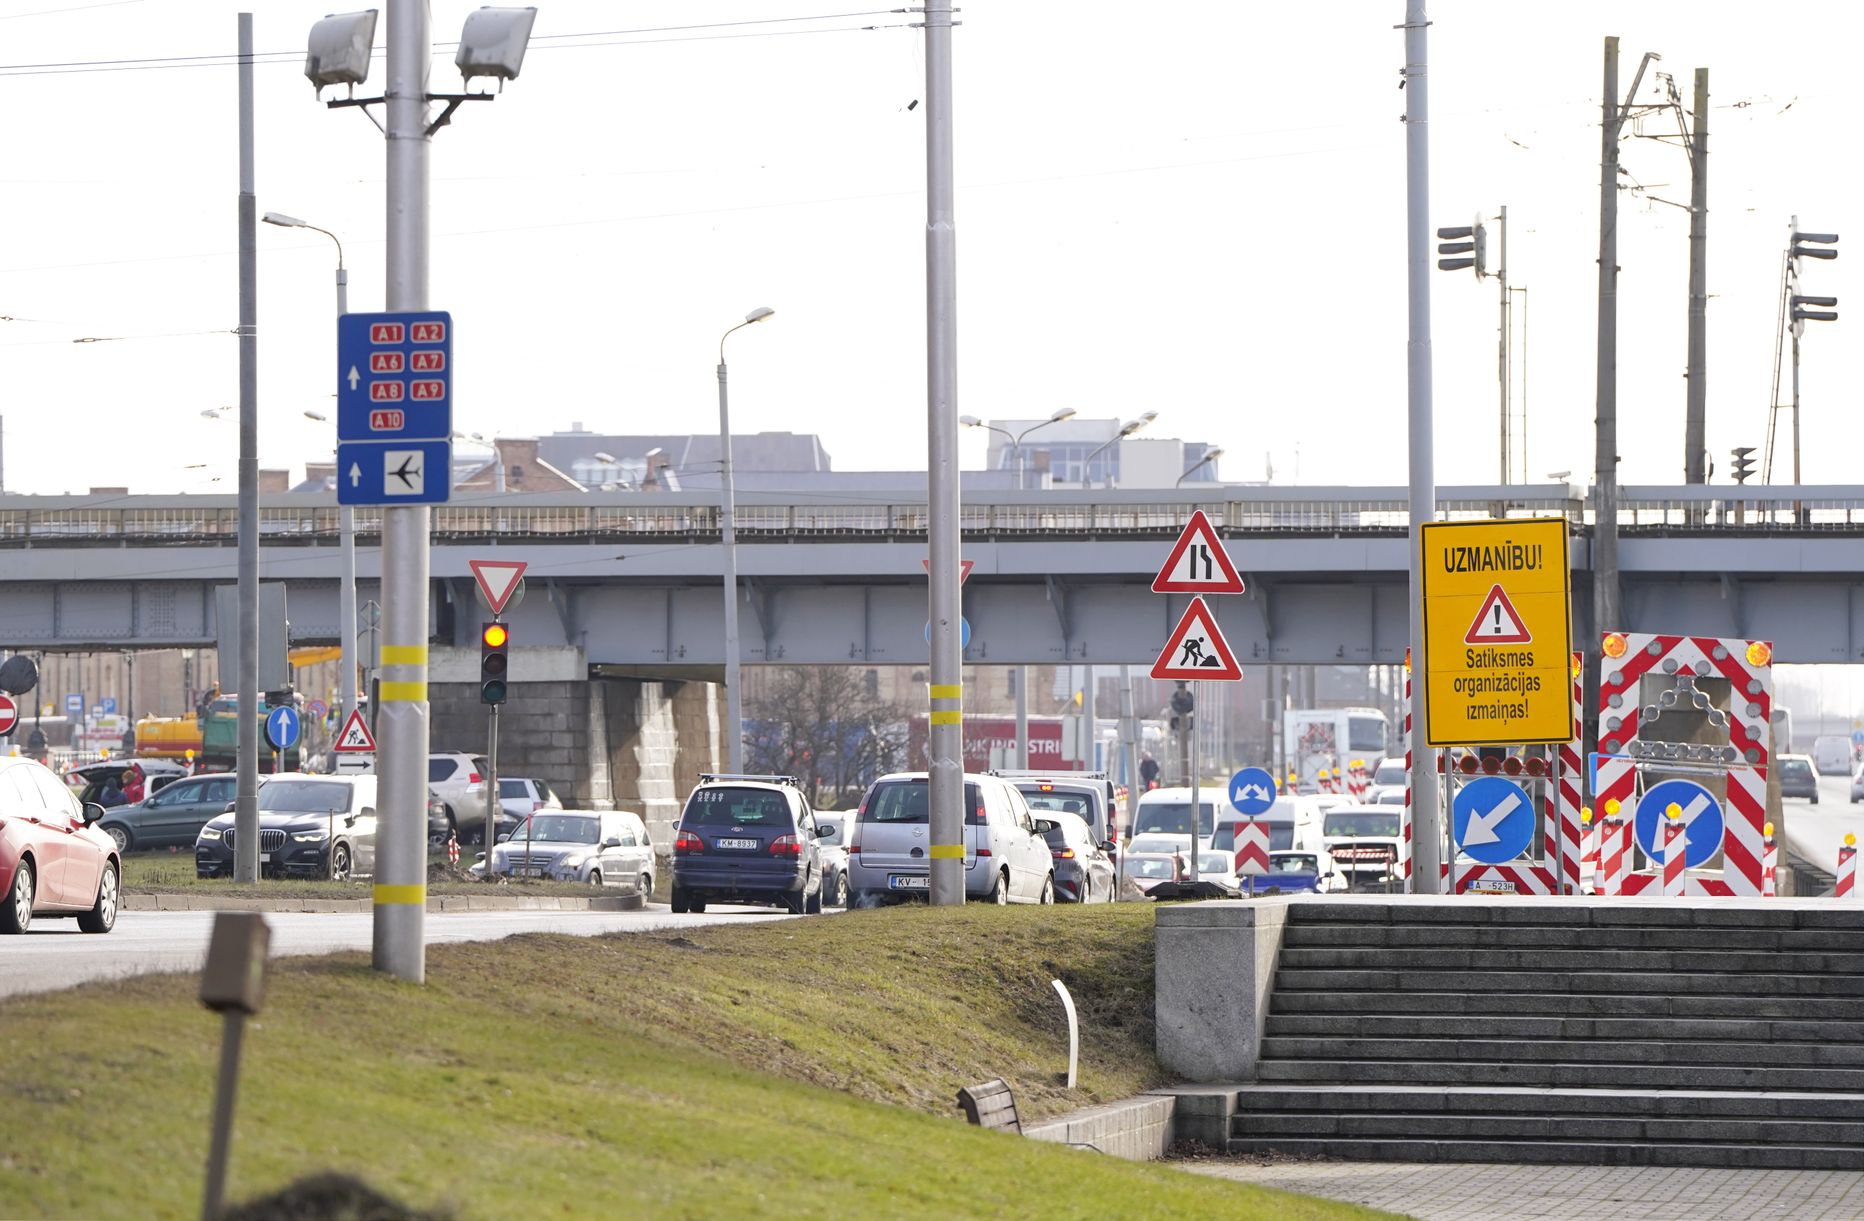 Norādes par satiksmes ierobežojumiem 11. novembra krastmalā, kur, saistībā ar dzelzceļa infrastruktūras projekta "Rail Baltica" integrēšanu Rīgas centra infrastruktūrā, no 13. februāra tiek ieviesta jauna satiksmes kārtība Ģenerāļa Radziņa krastmalā, kur virzienā no Akmens tilta uz Salu tiltu satiksmei tiks nodrošināta viena josla.